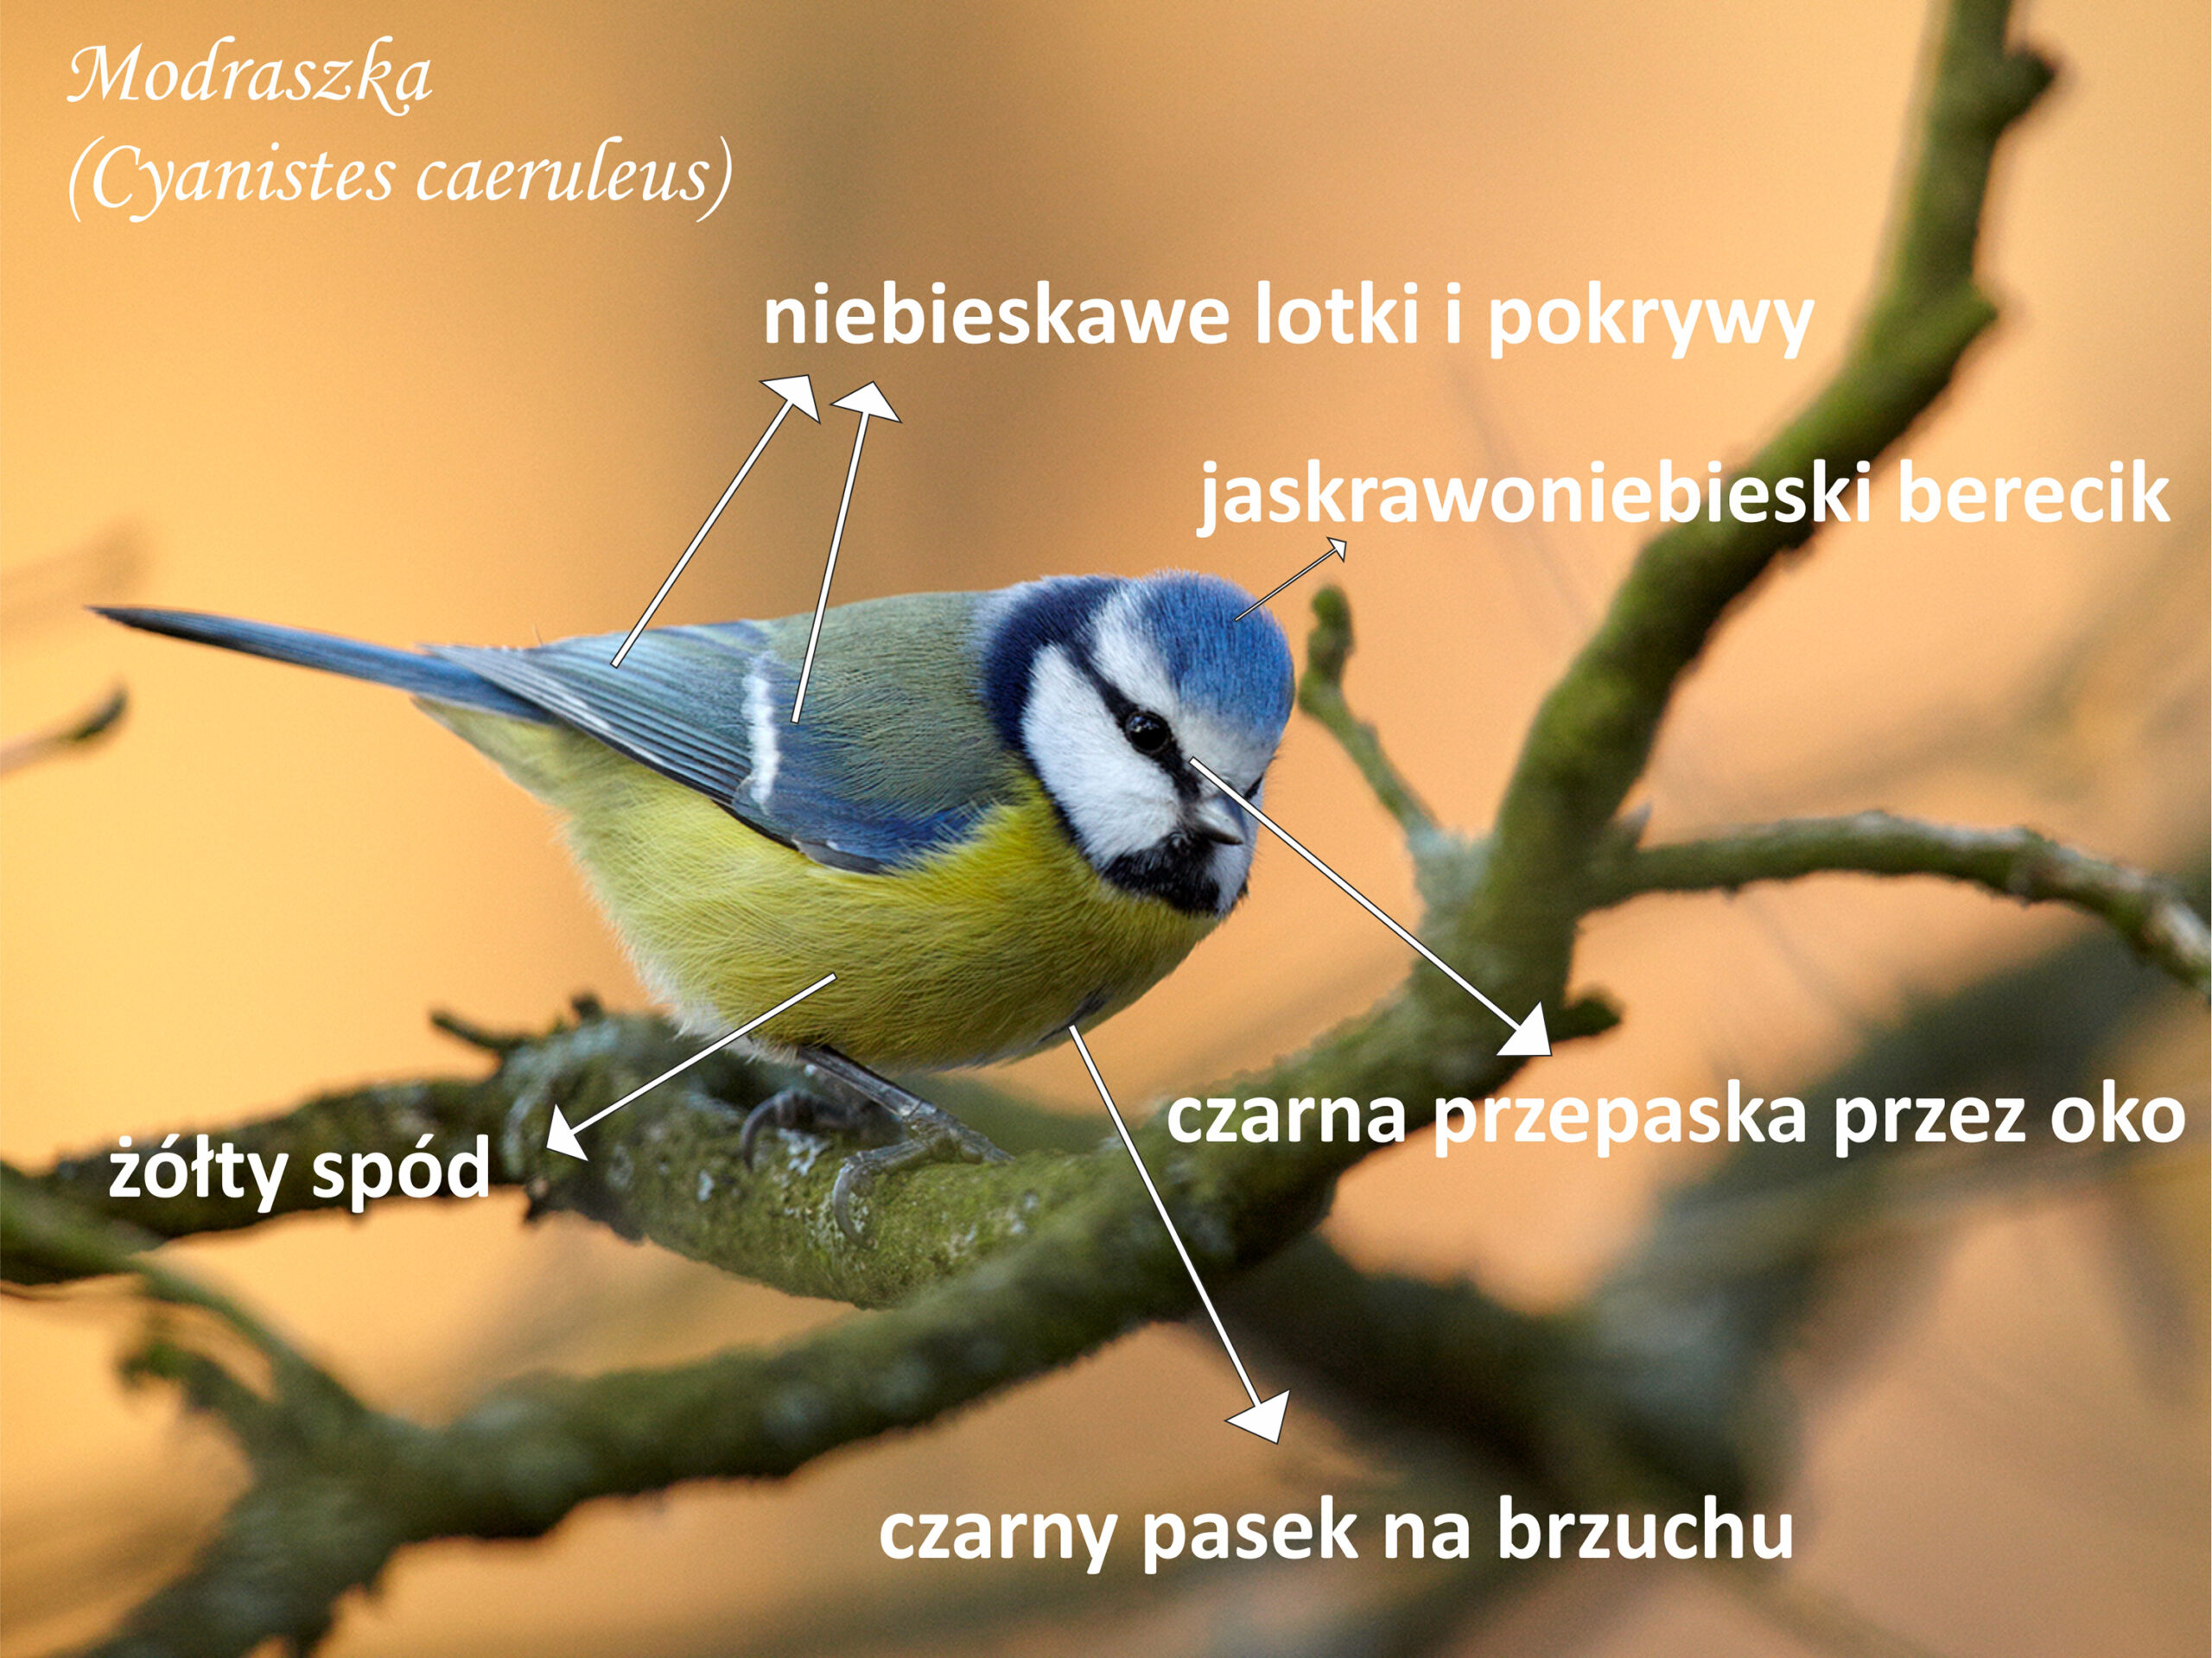 Sikorka modraszka (Cyanistes caeruleus) / Antoni Kasprzak / Regionalna Dyrekcja Lasów Państwowych w Poznaniu